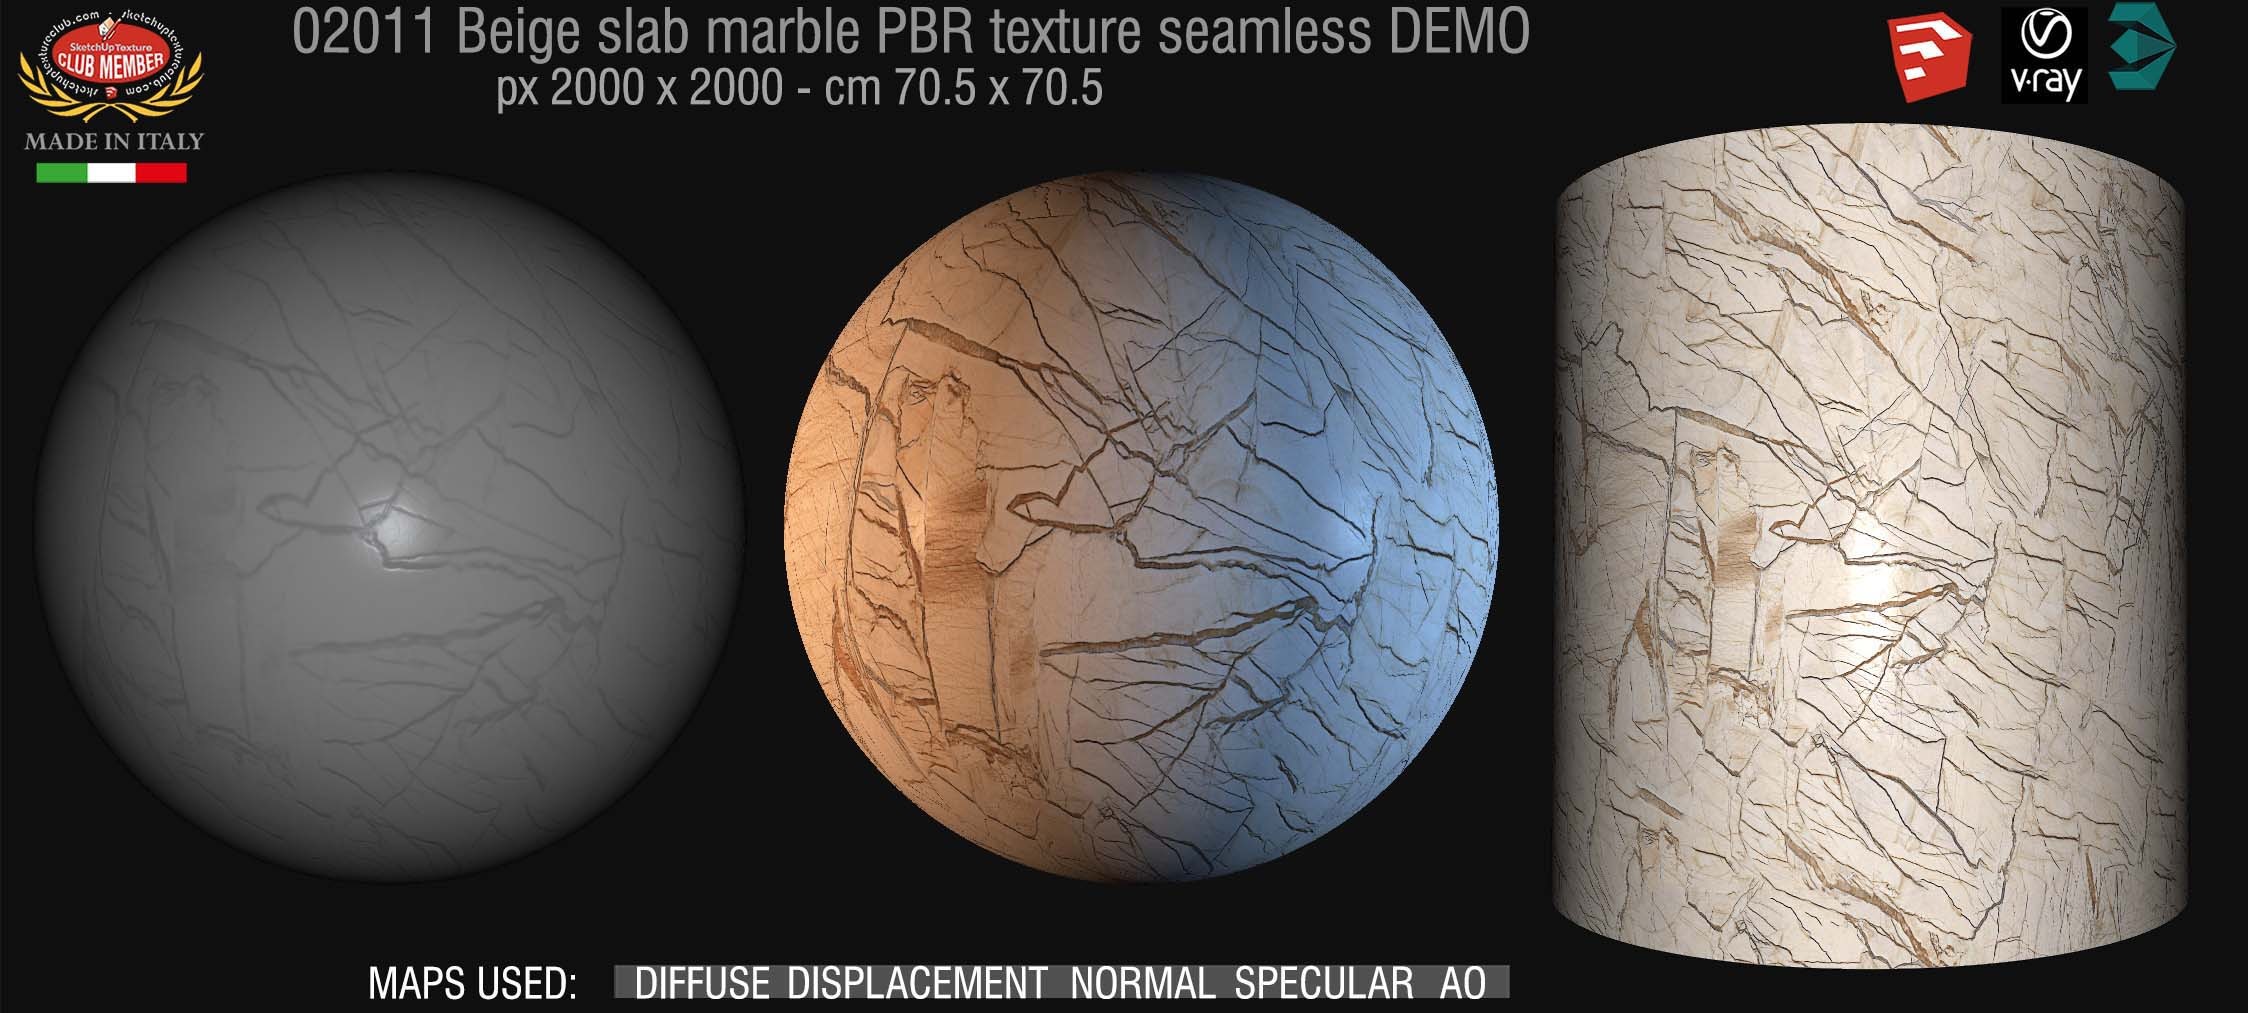 02011 lab marble beige PBR texture seamless DEMO